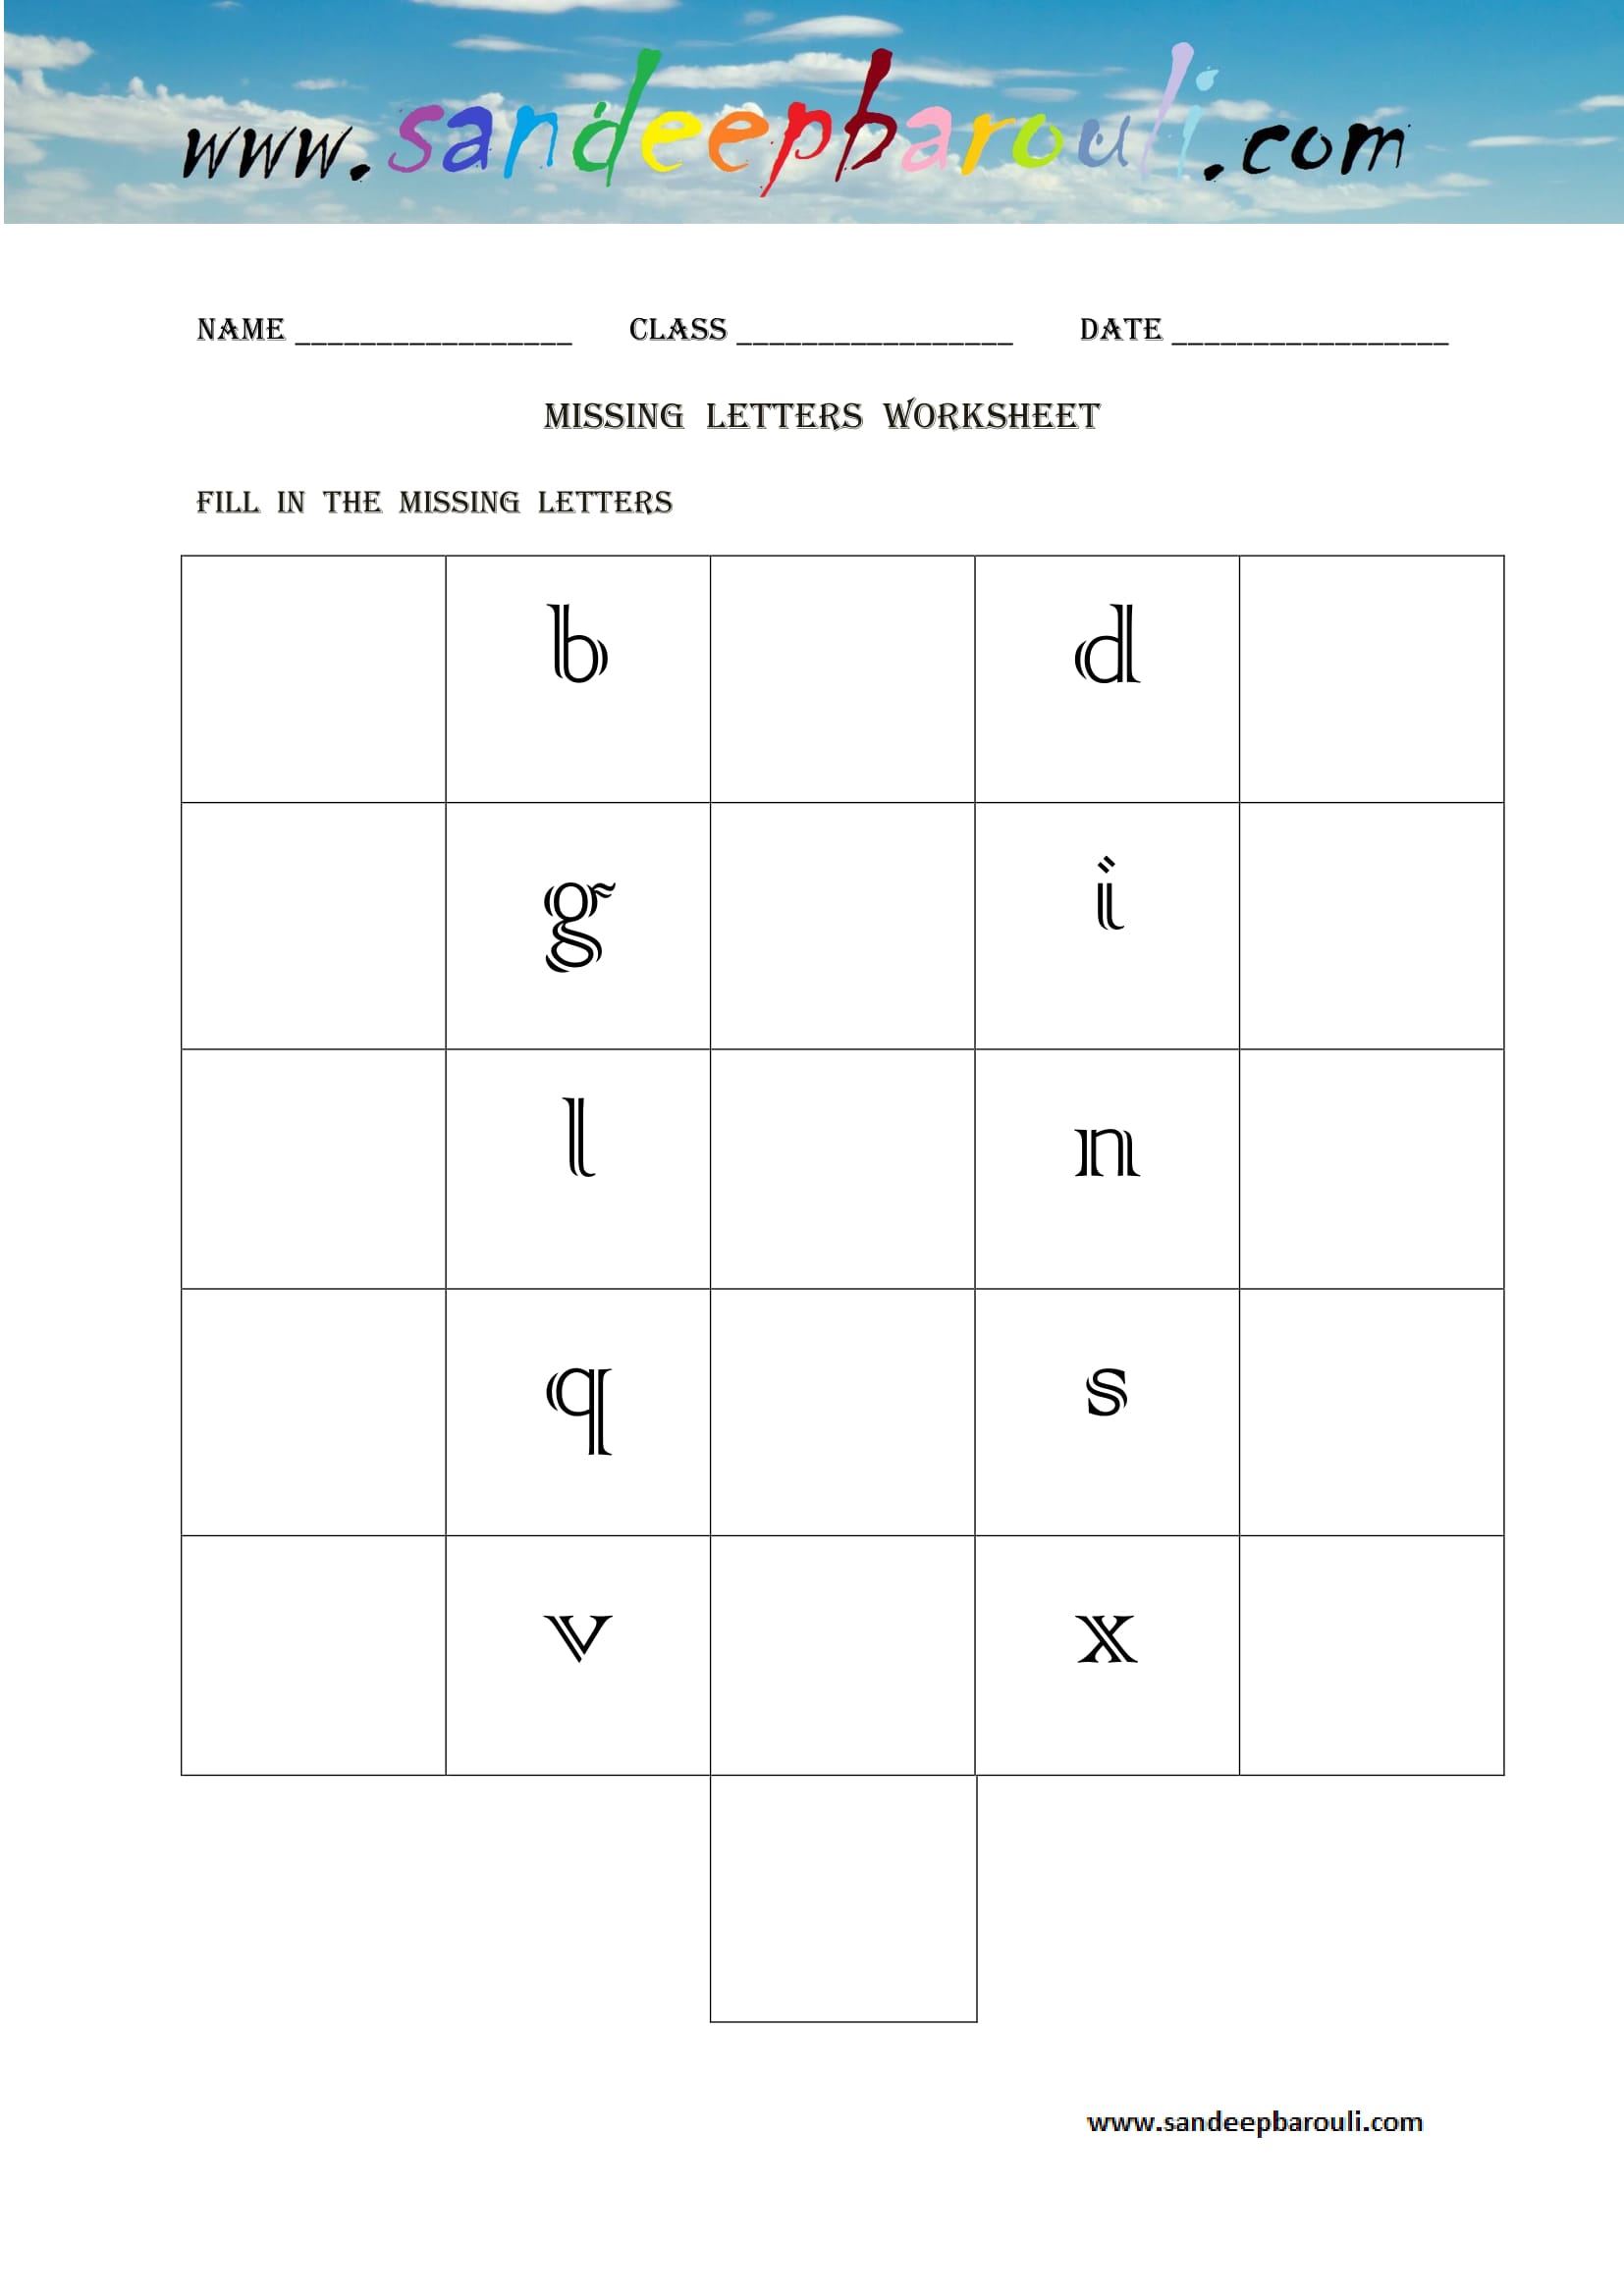 Missing letters Worksheet (18)